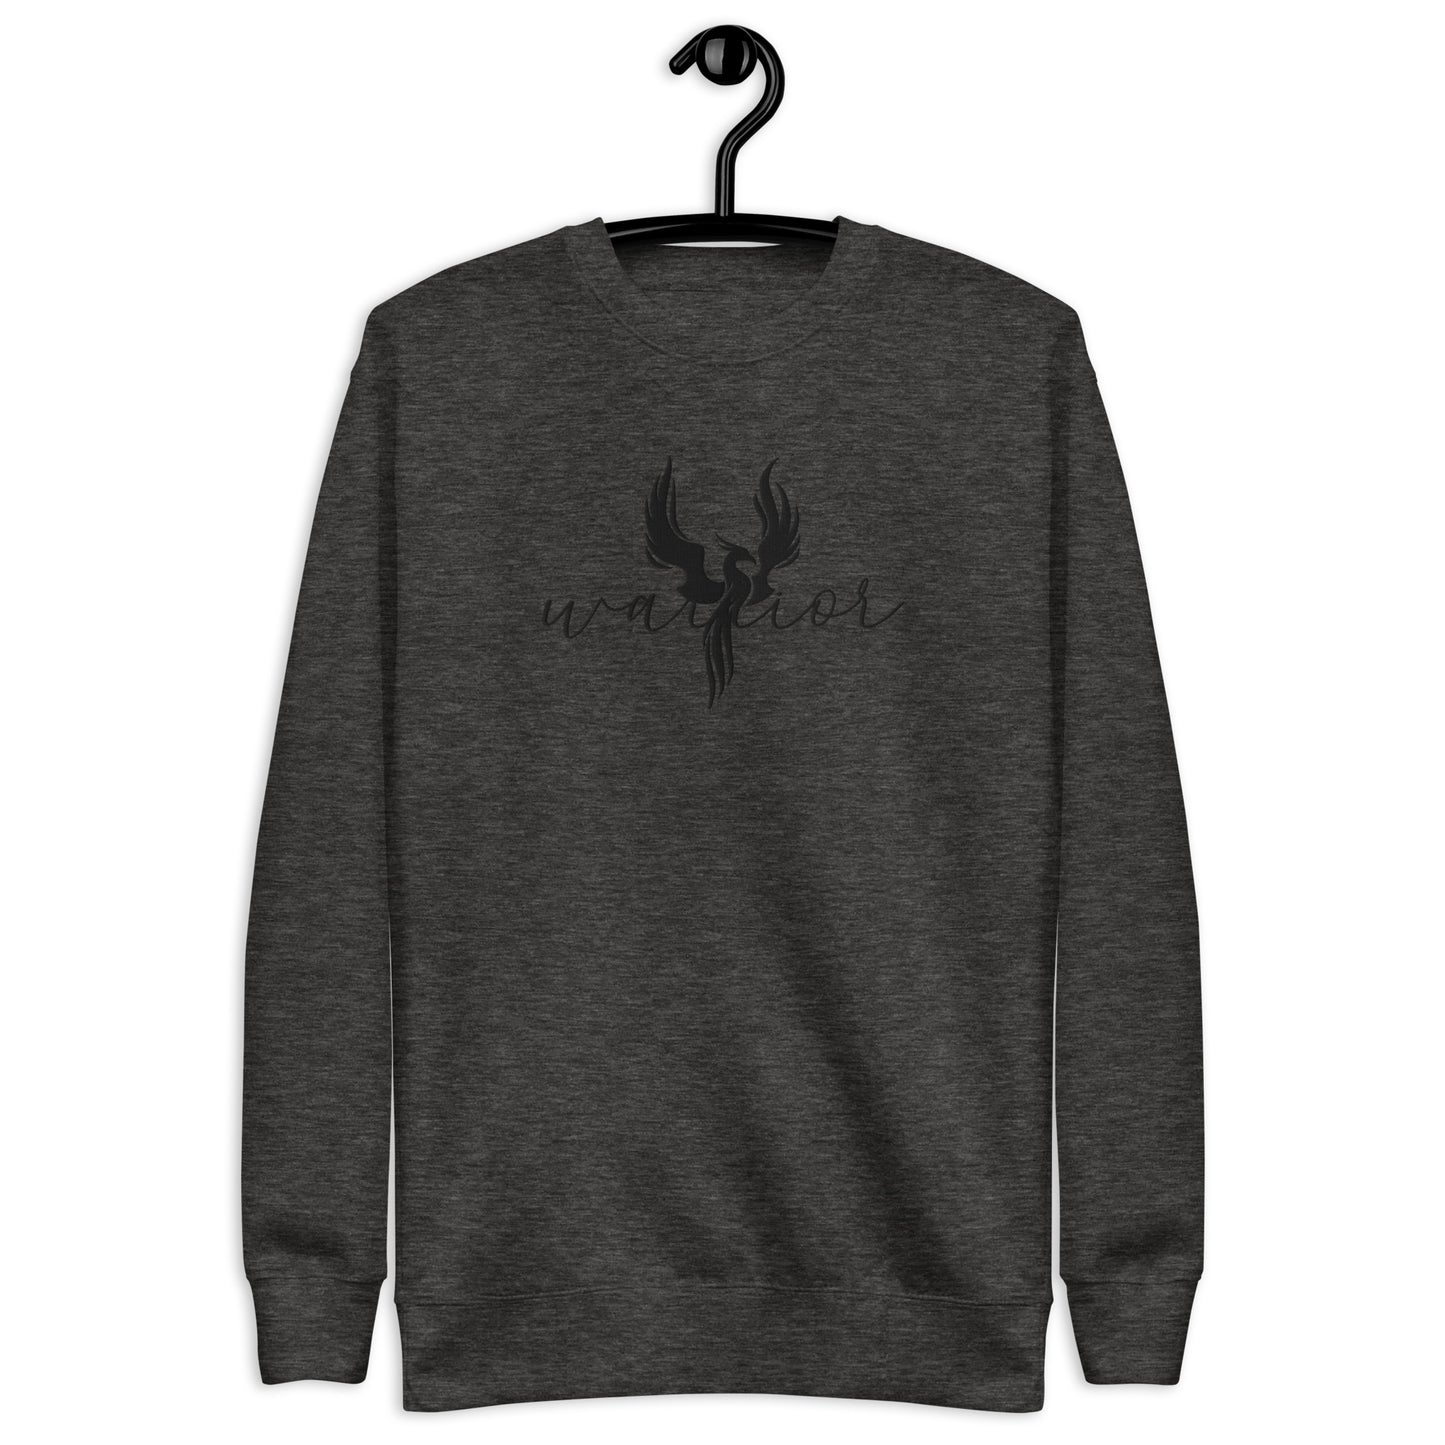 Warrior Unisex Premium Sweatshirt